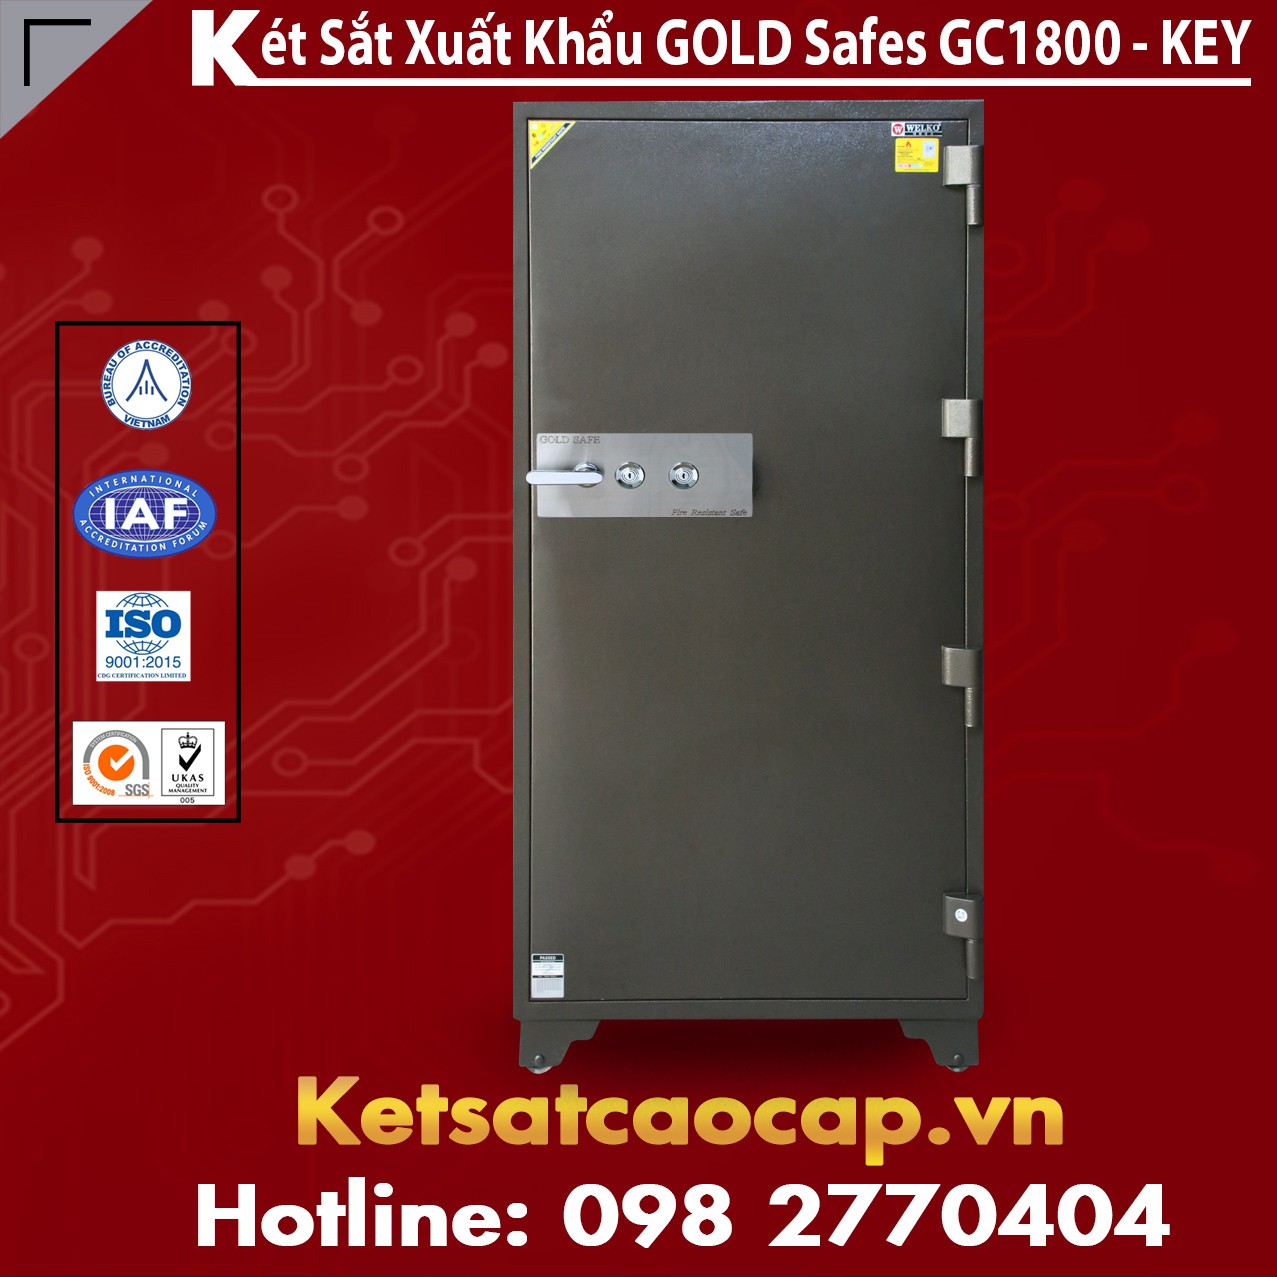 Két Sắt Đại Gia GOLD SAFES GC1800 KEY